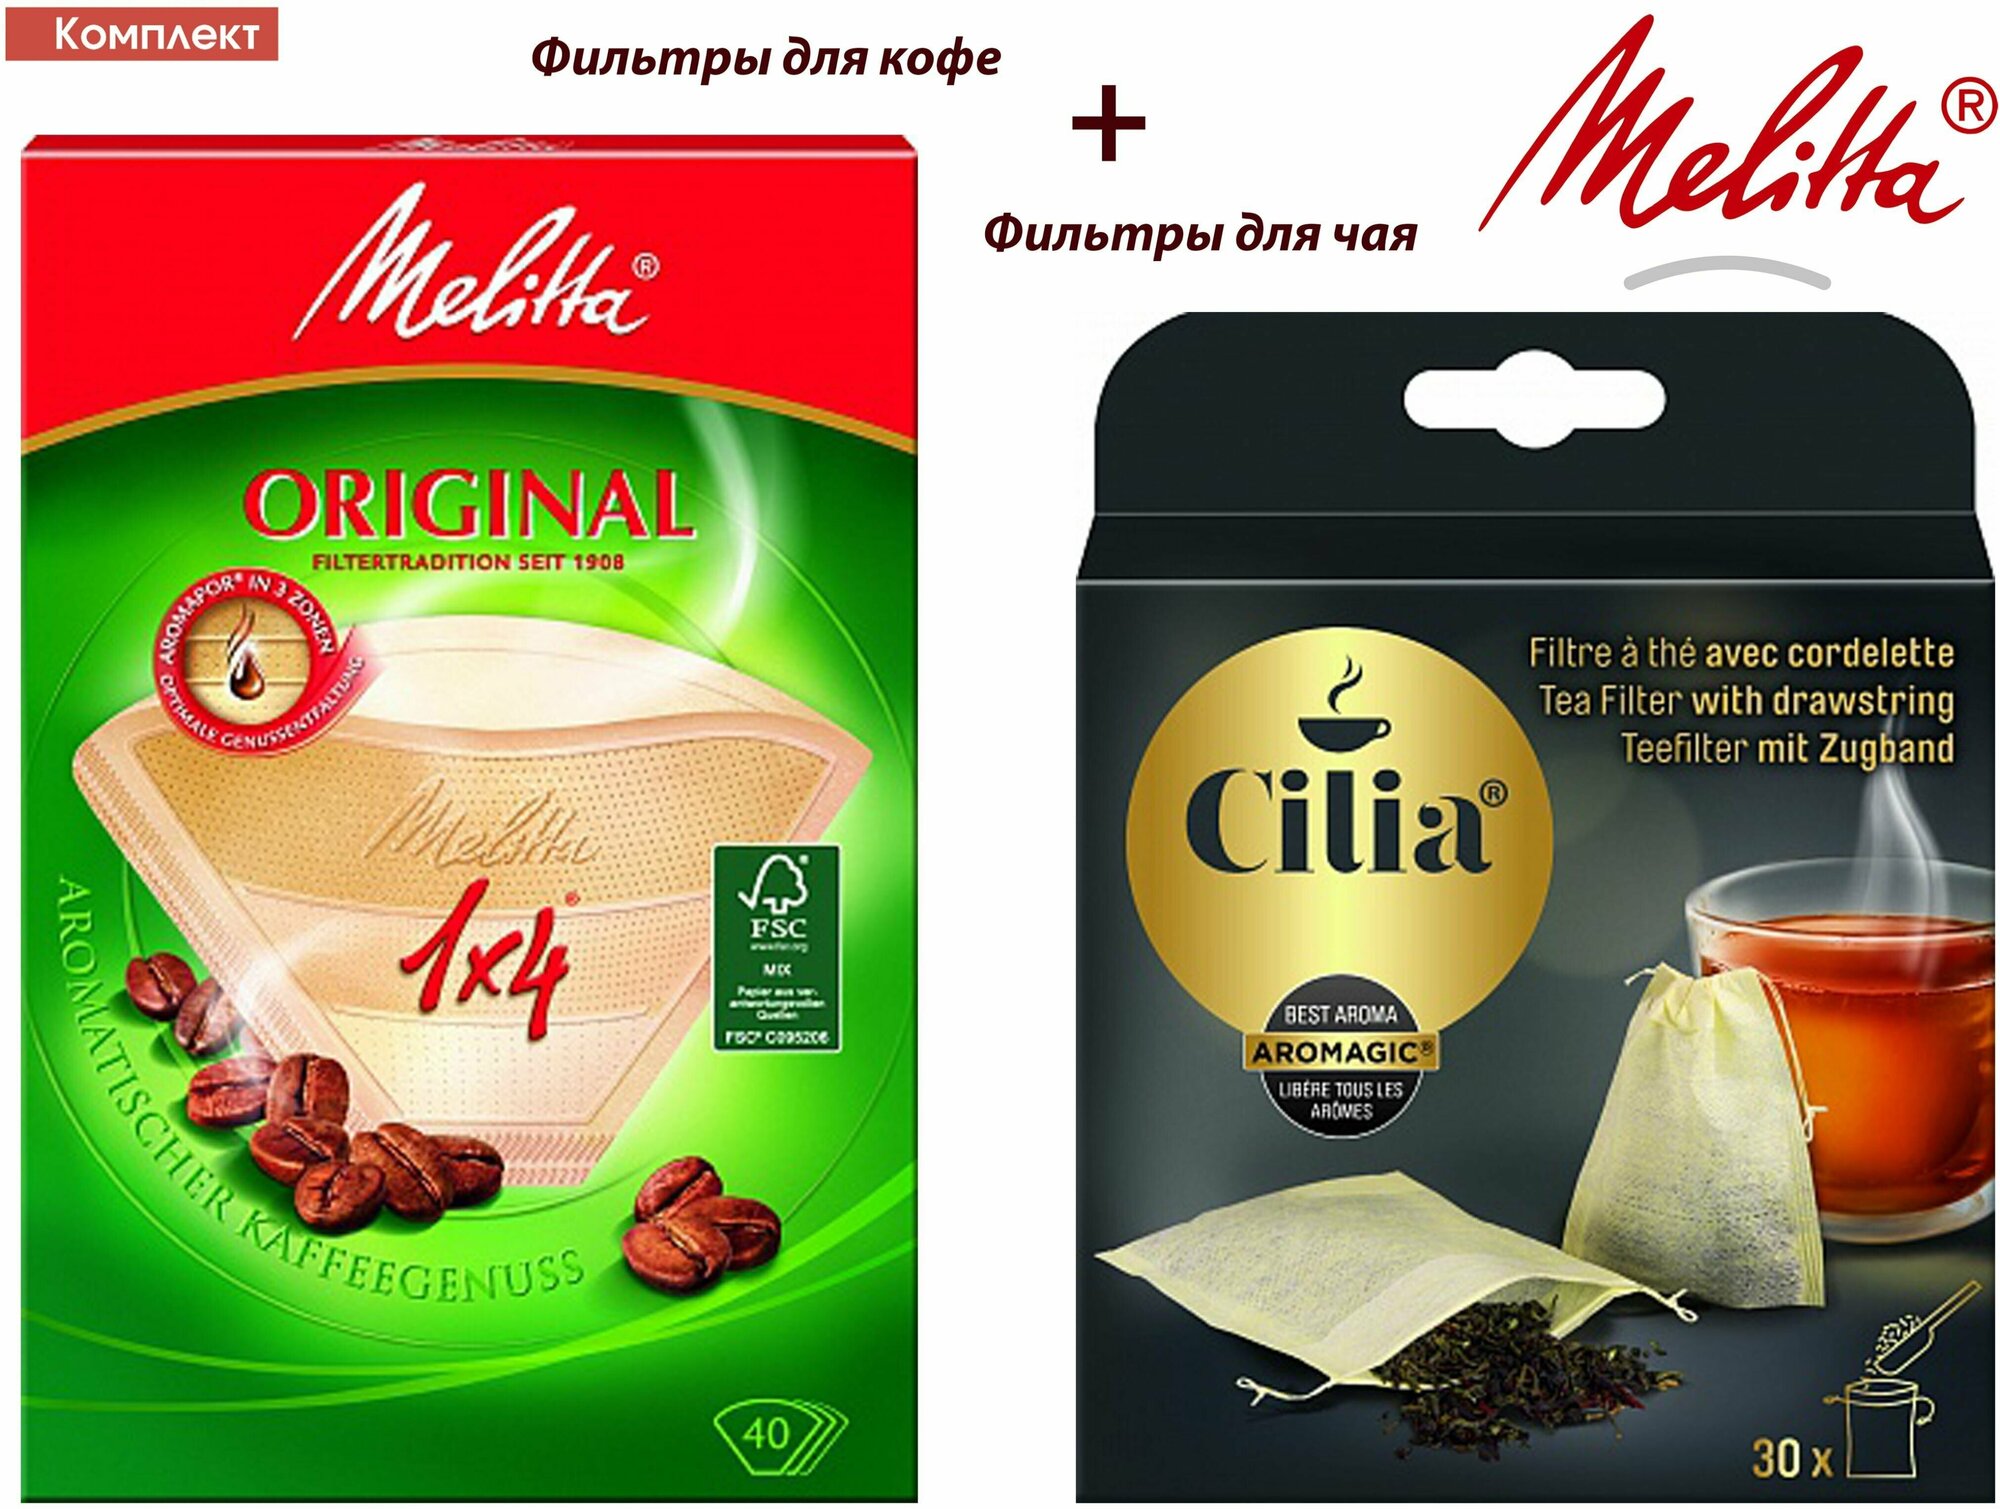 Комплект: Melitta Original, Brown фильтры для заваривания кофе, 1х4/40 и фильтры для чая